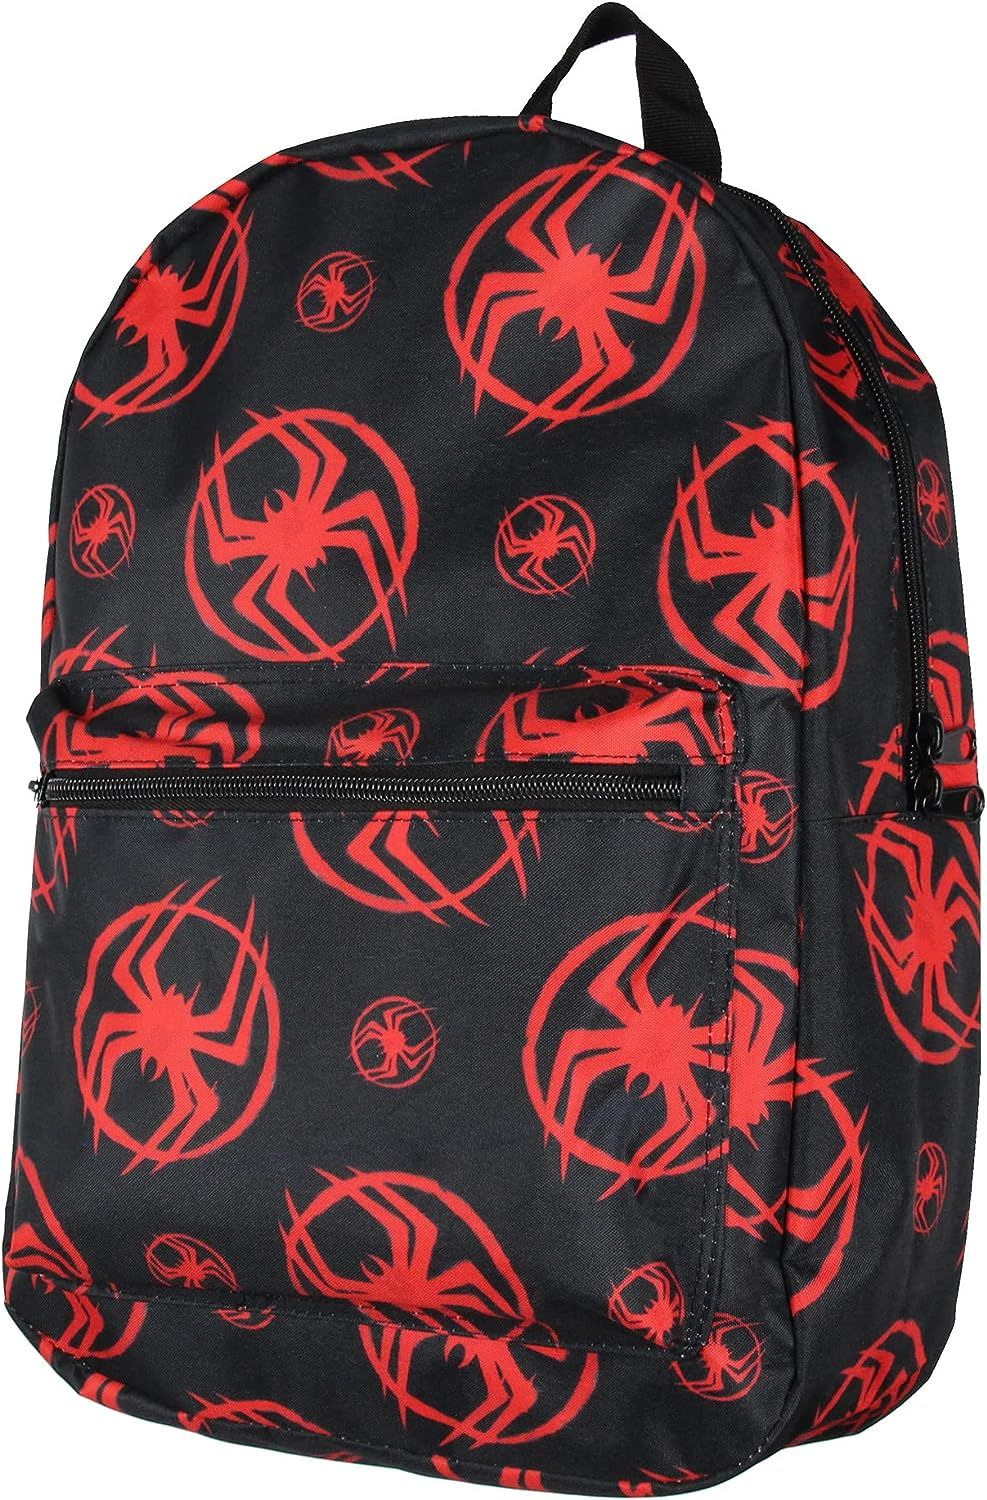 Bioworld Marvel Spider-Man Miles Morales Backpack Laptop Travel 